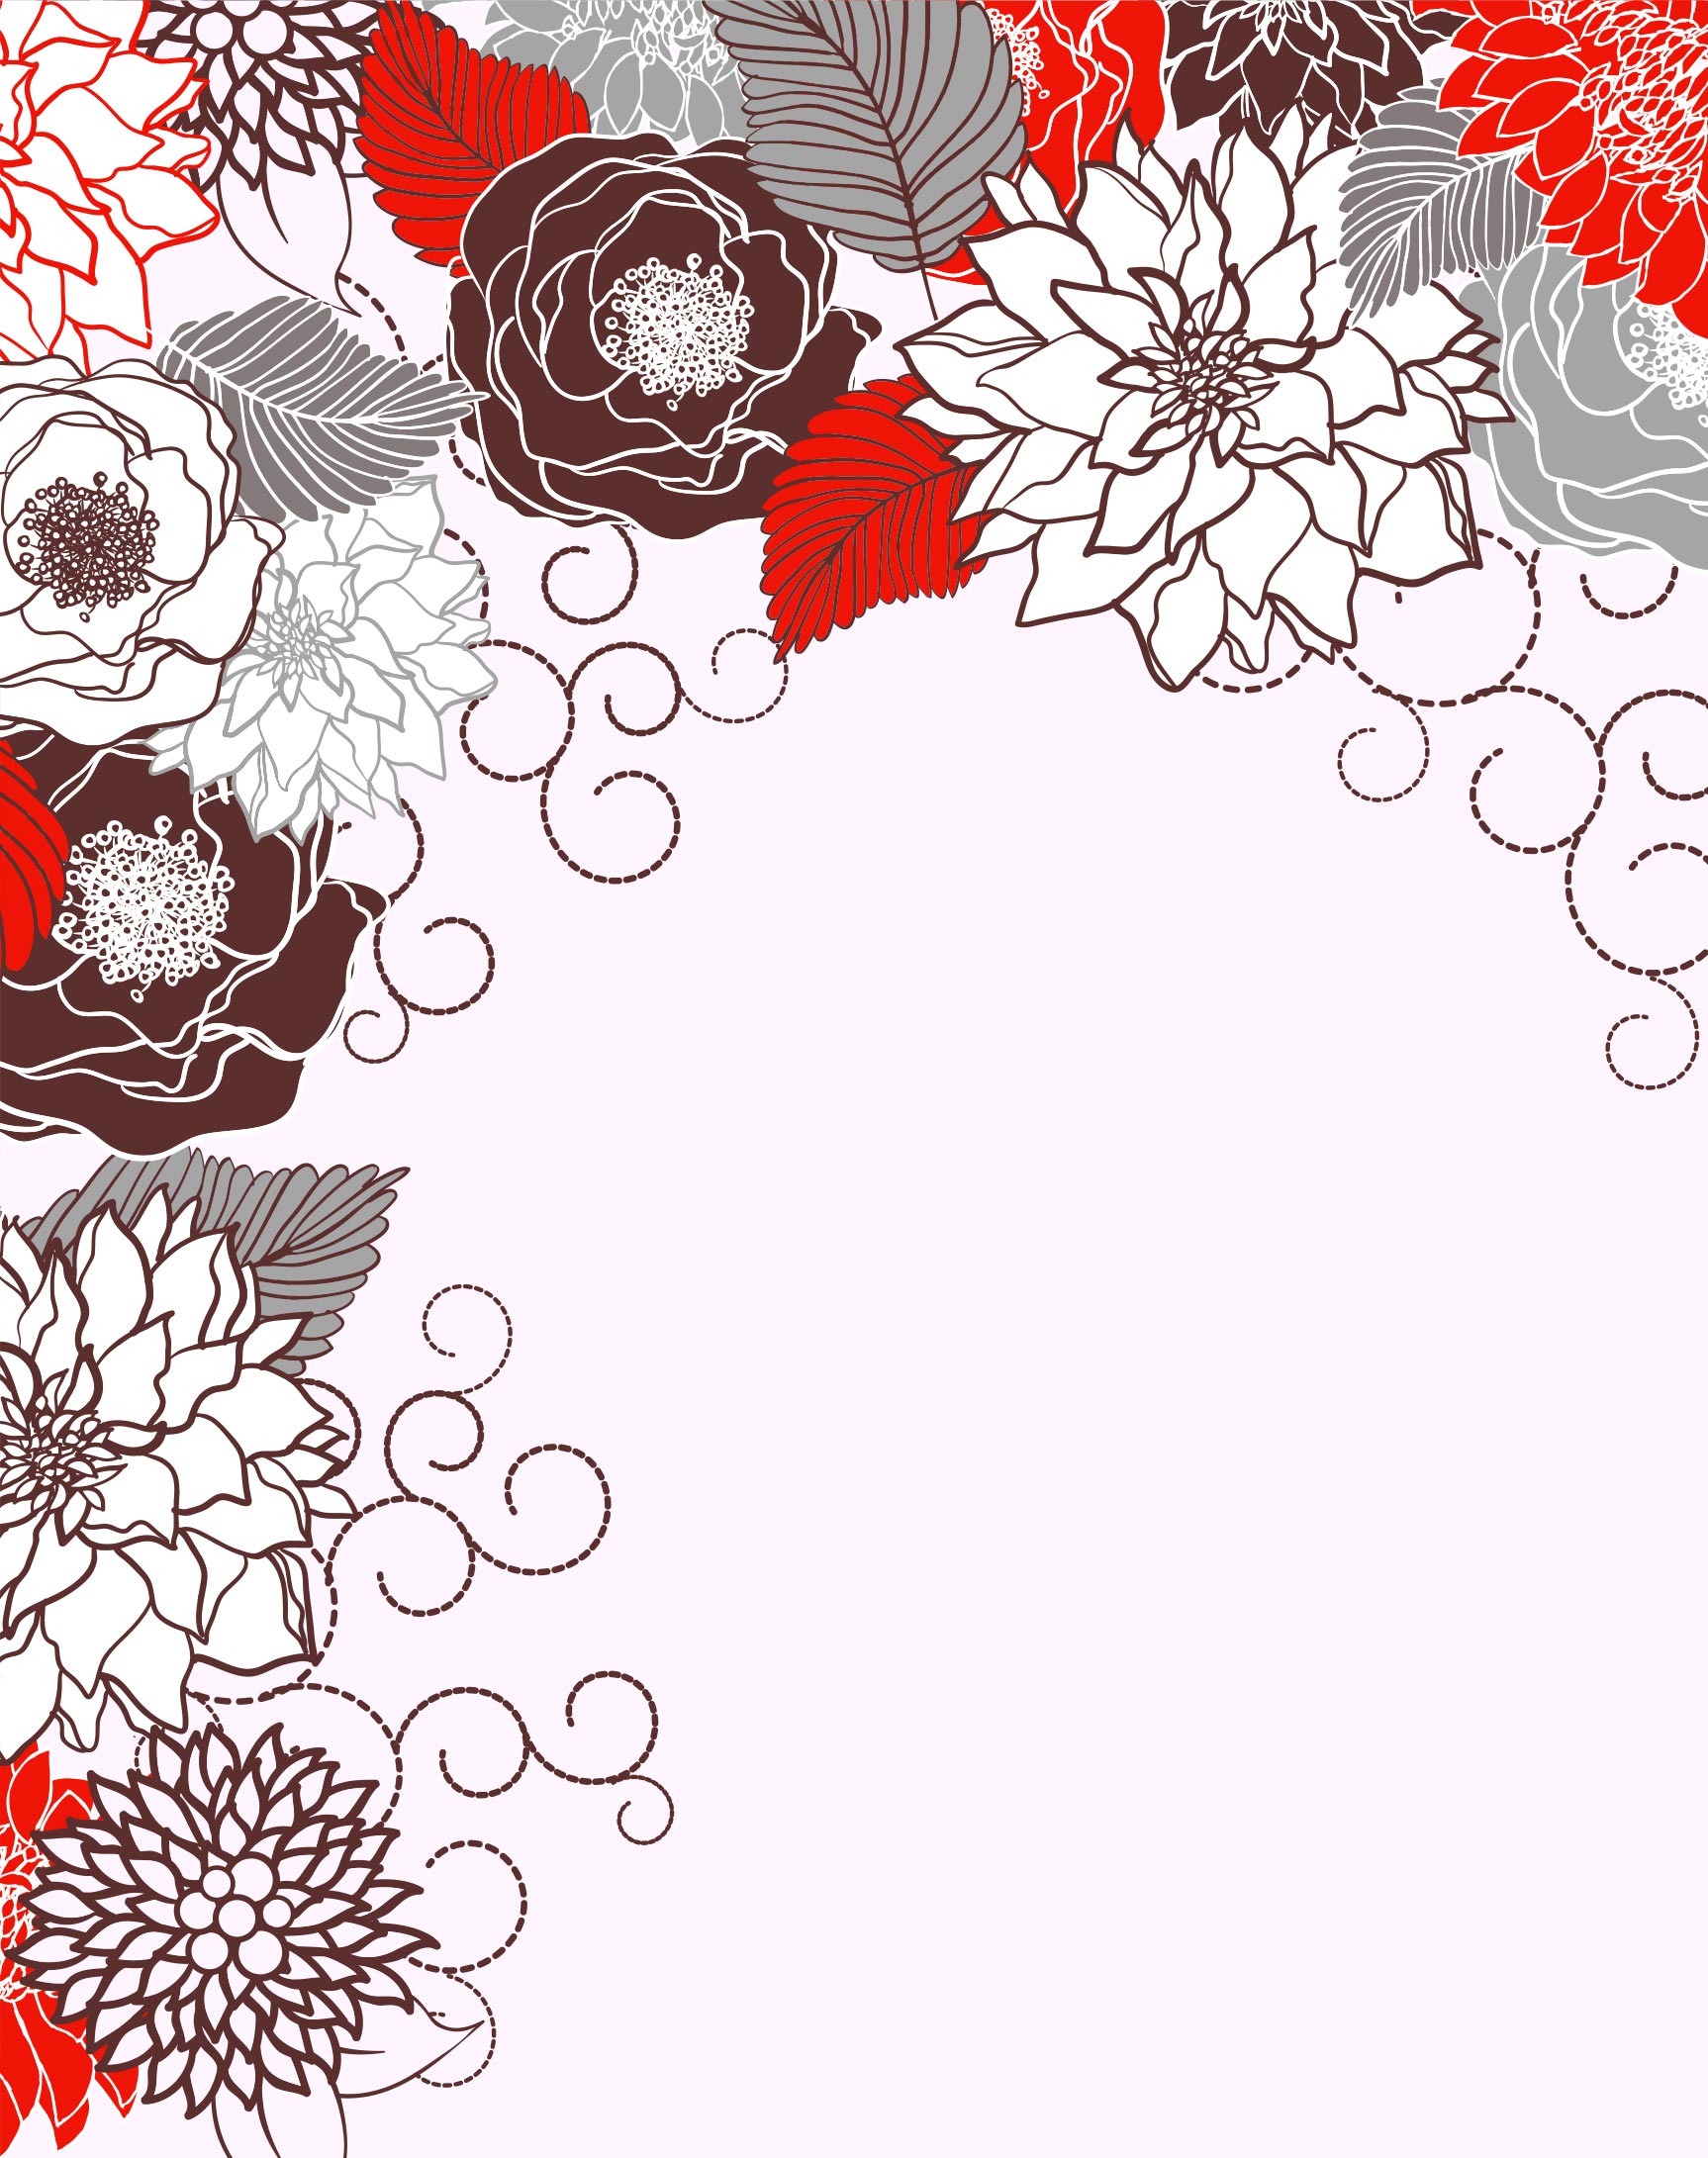 花の壁紙 背景のイラスト 画像no 580 ポップな花の色紙 無料のフリー素材集 百花繚乱